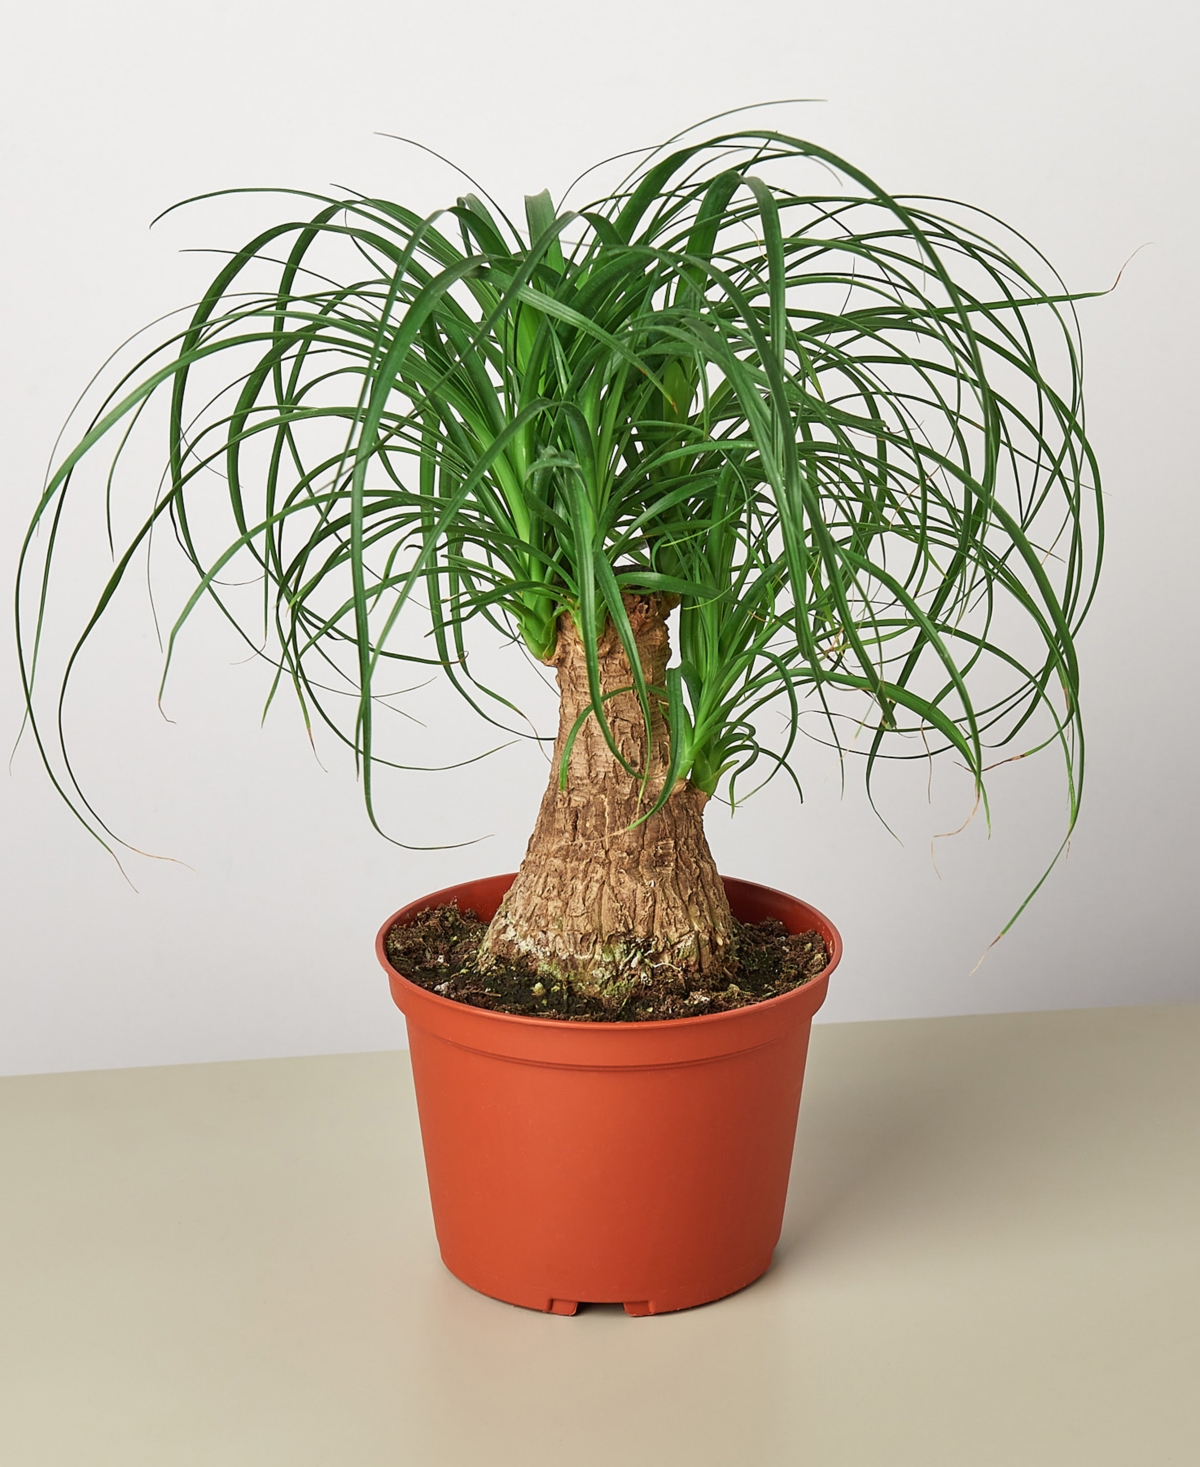 Palm 'Ponytail' Live Plant, 6" Pot